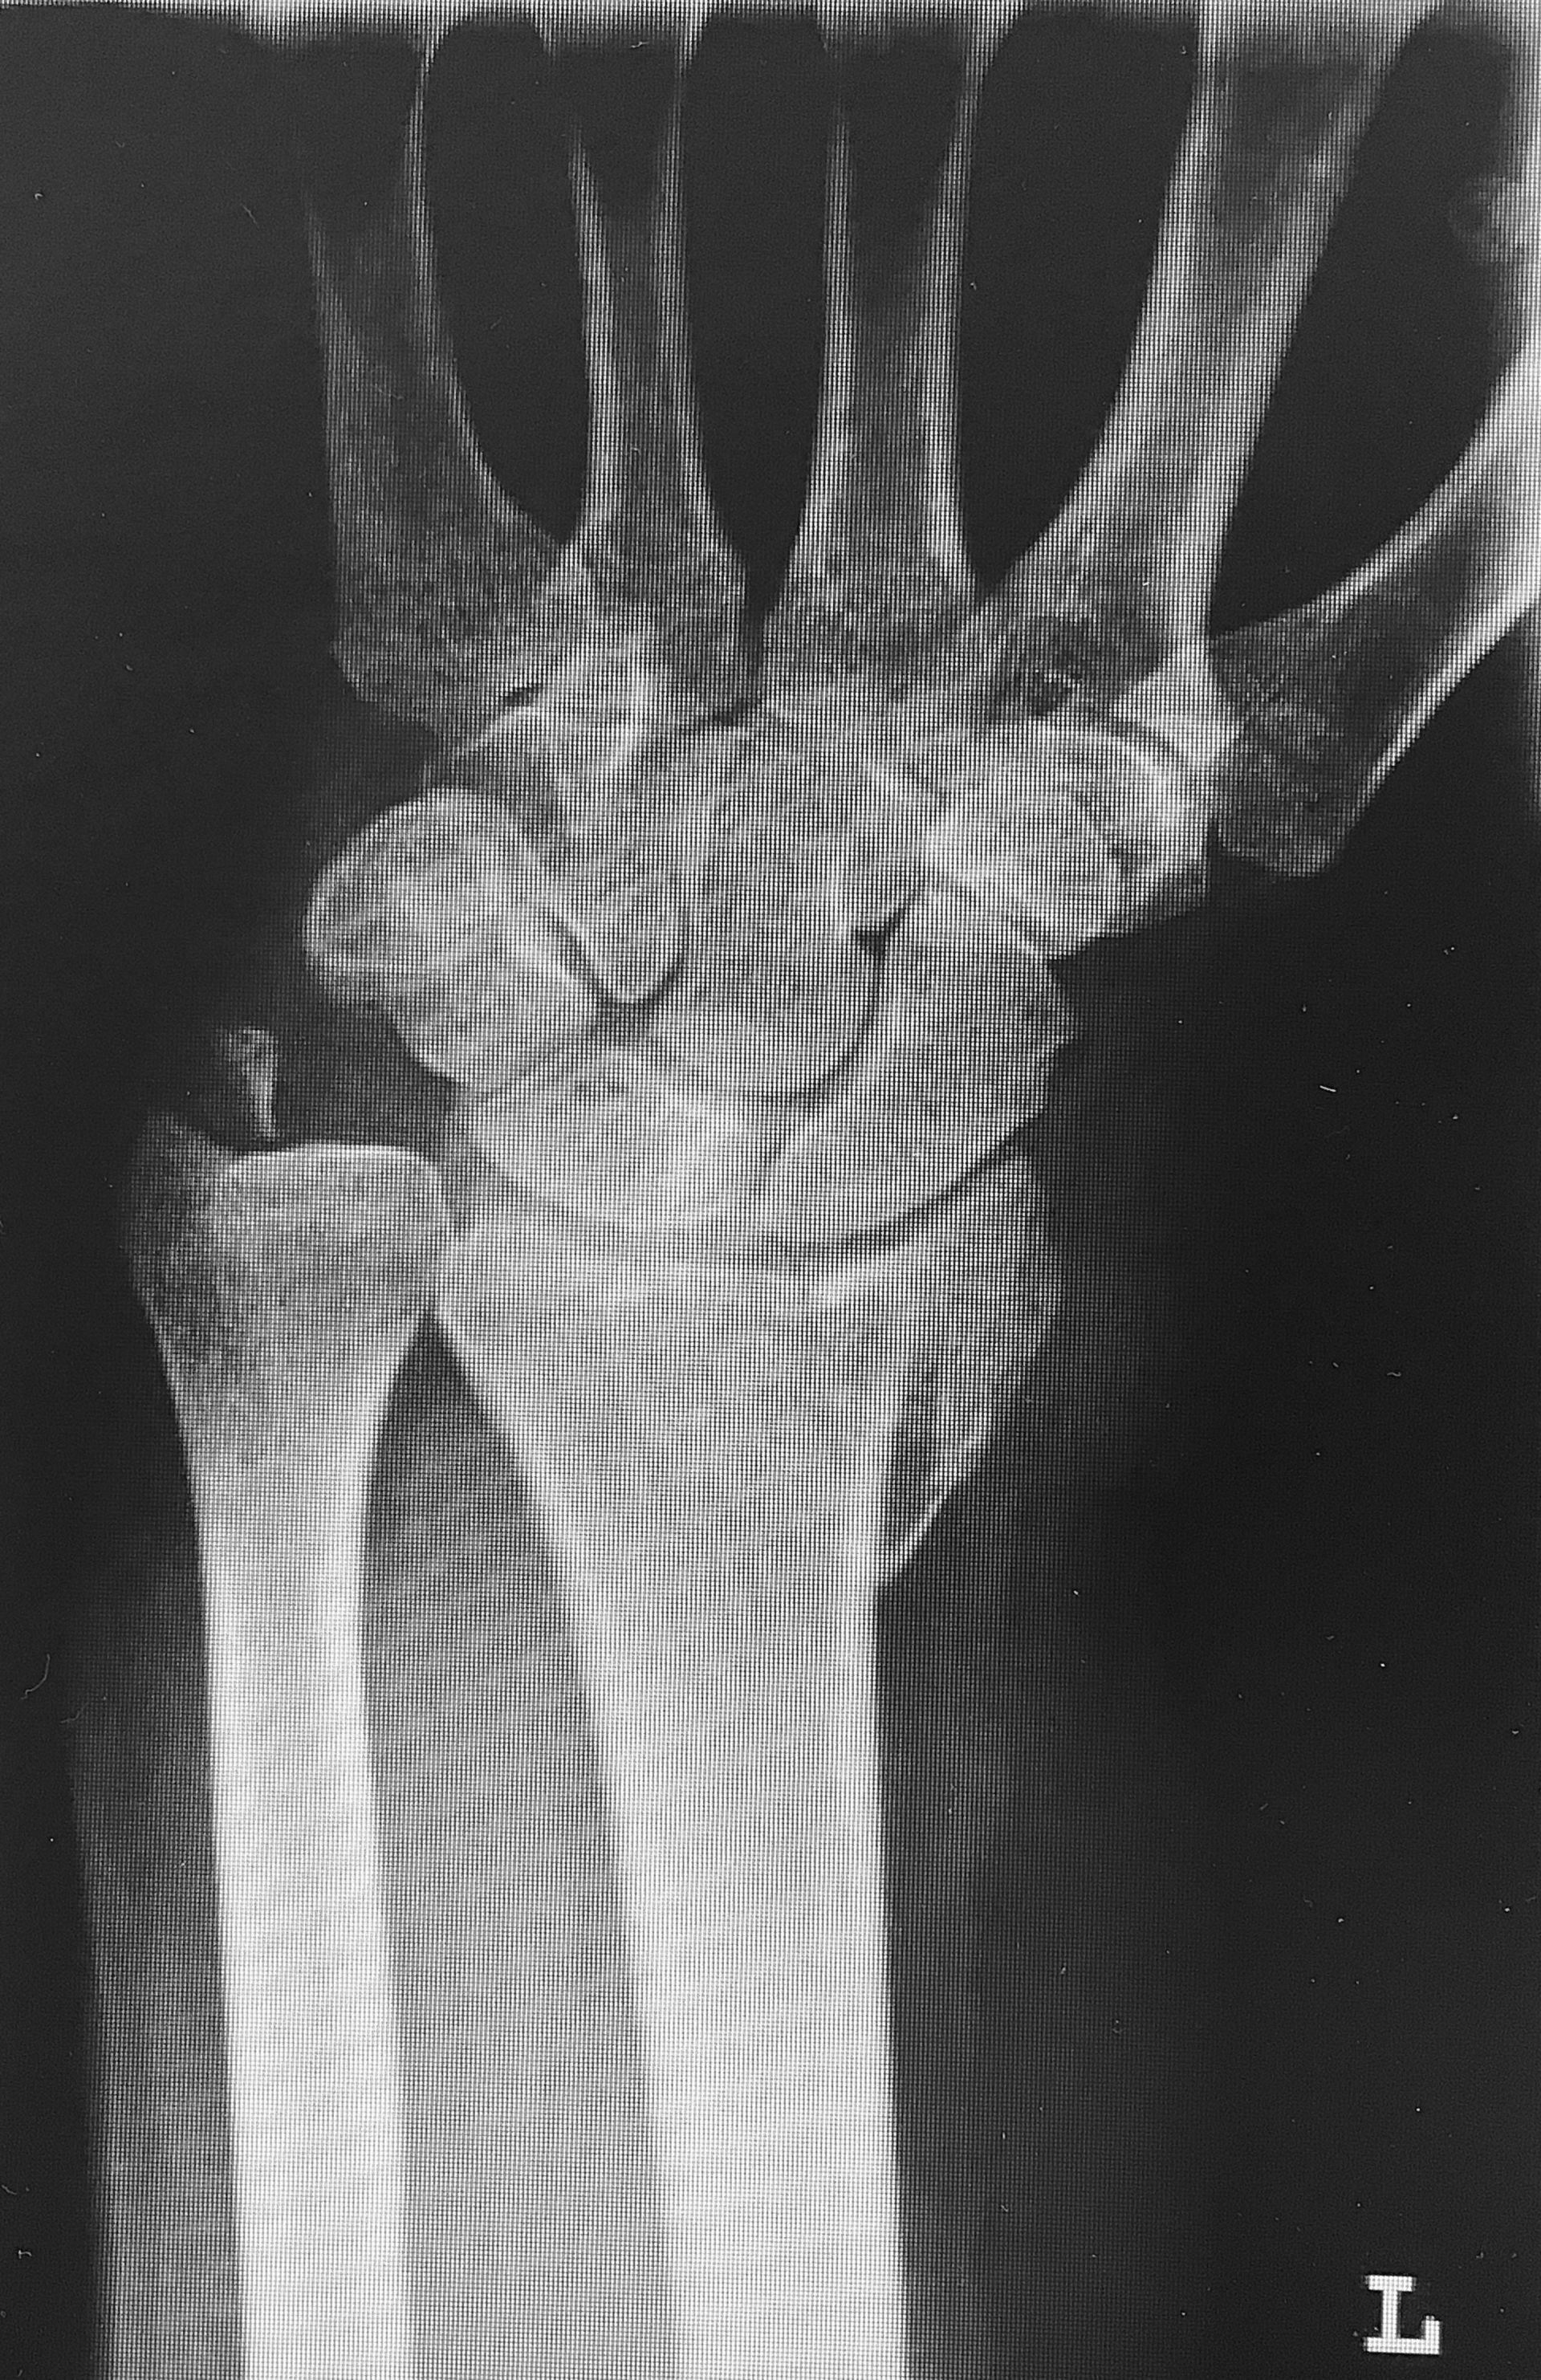 Röntgen des linken Handgelenkes mit Darstellung einer distalen Radiusfraktur